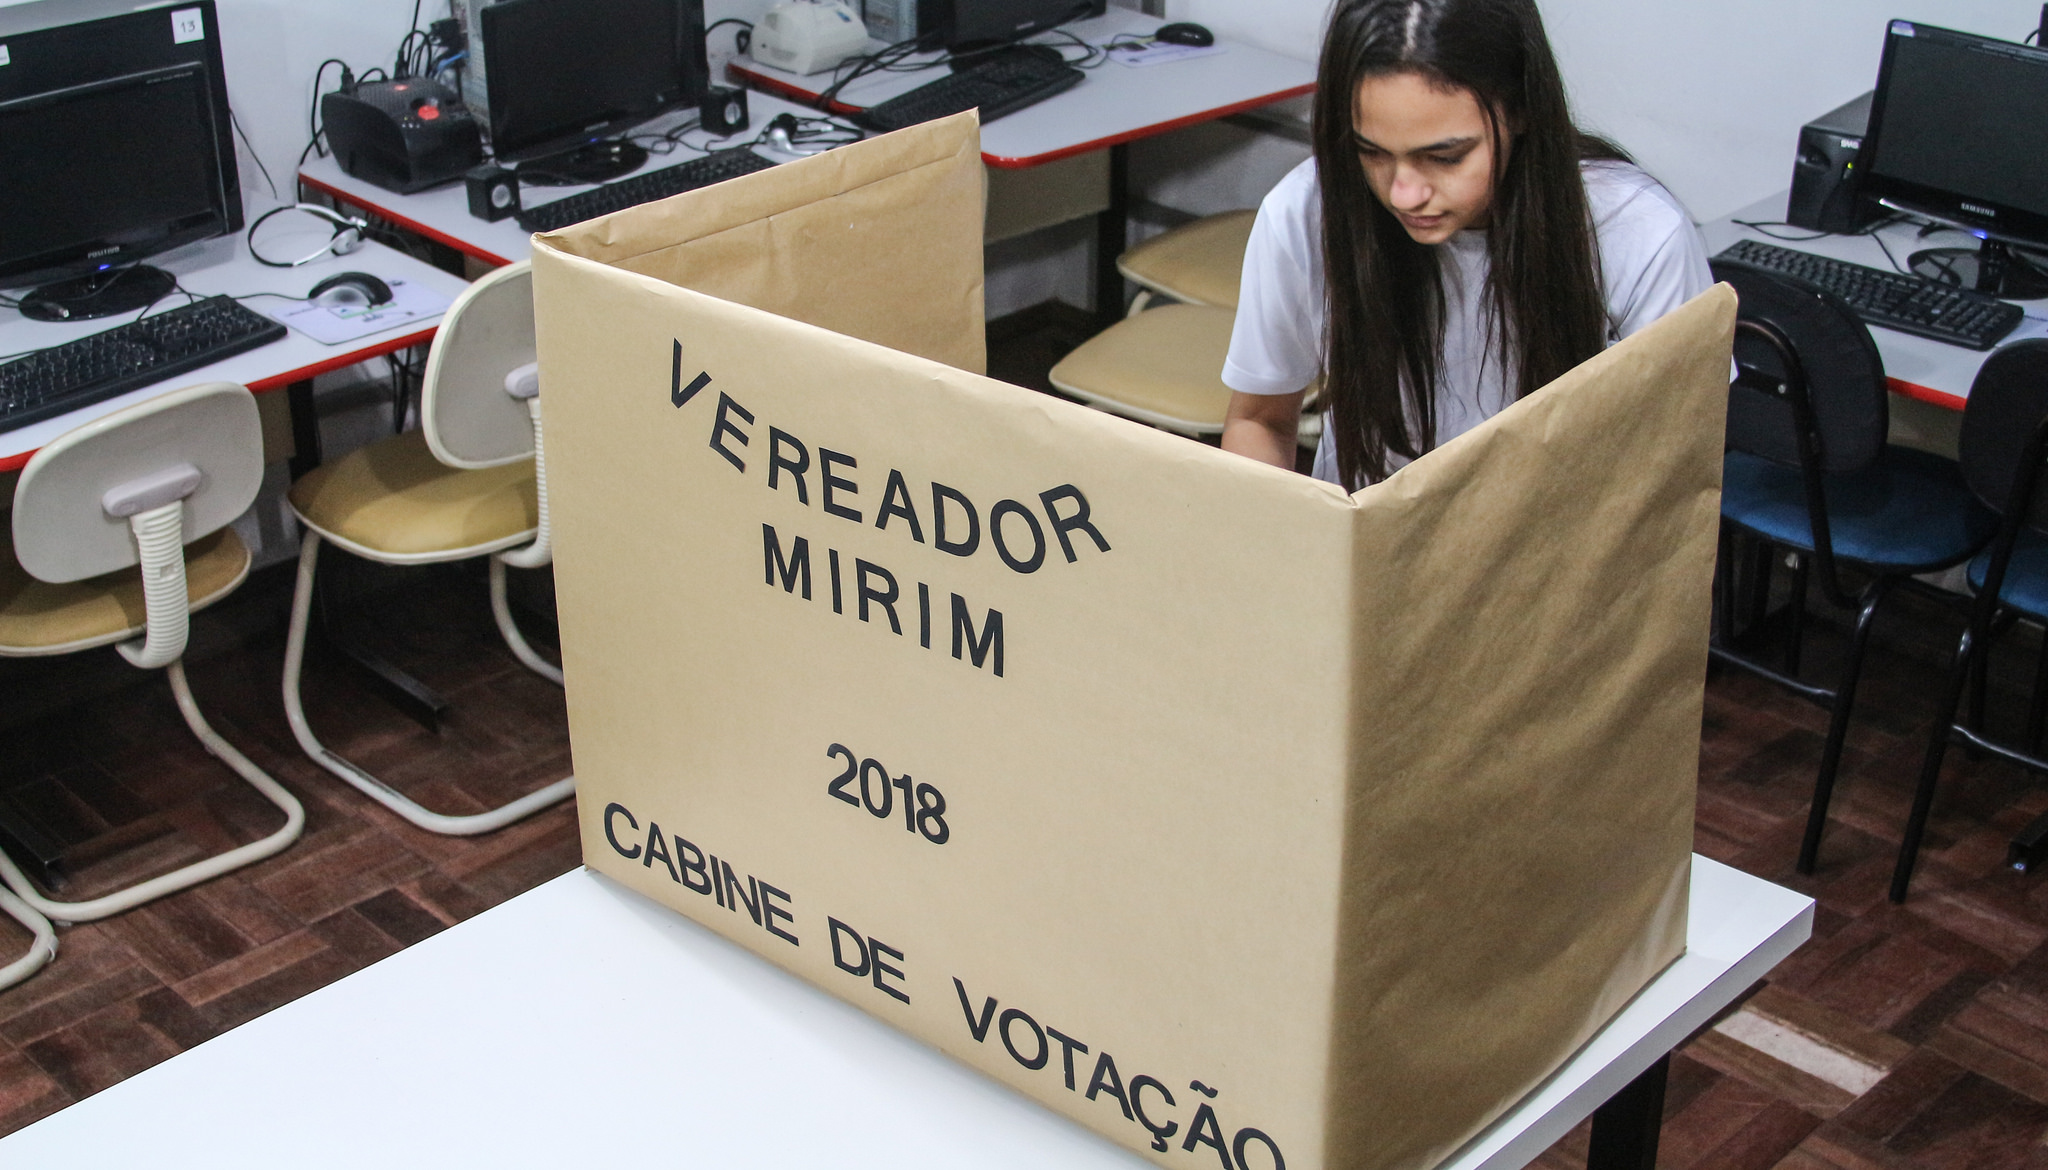 TV Câmara – Comunidade escolar vai às urnas para eleger vereadores mirins